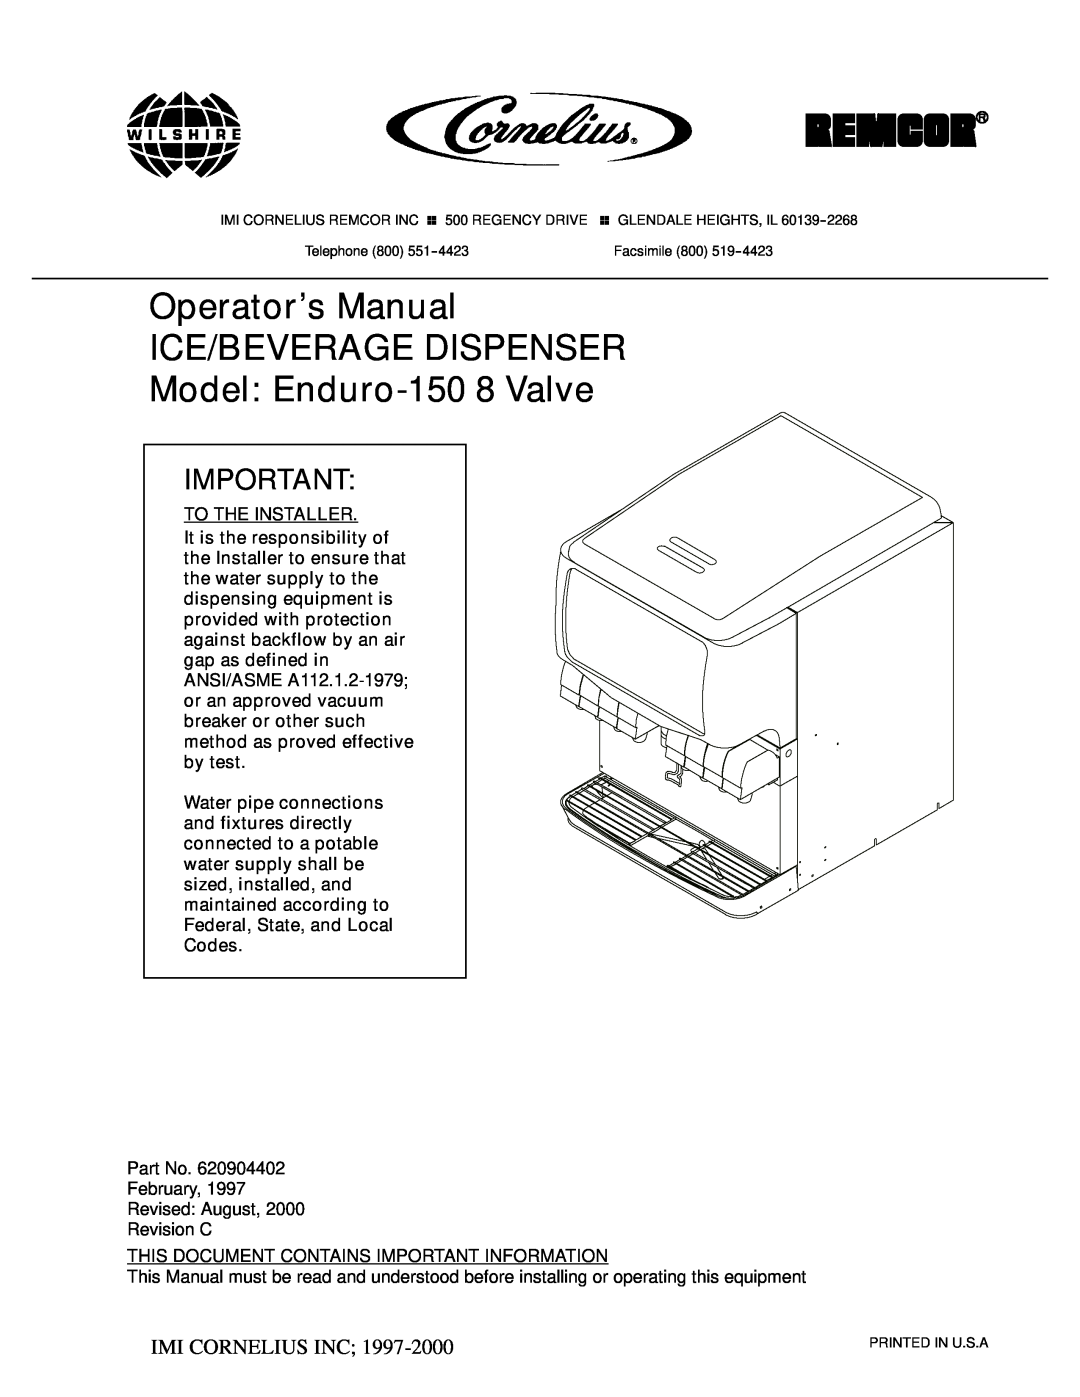 Cornelius manual Operator’s Manual ICE/BEVERAGE DISPENSER Model Enduro-150 8 Valve, Ó Imi Cornelius Inc 